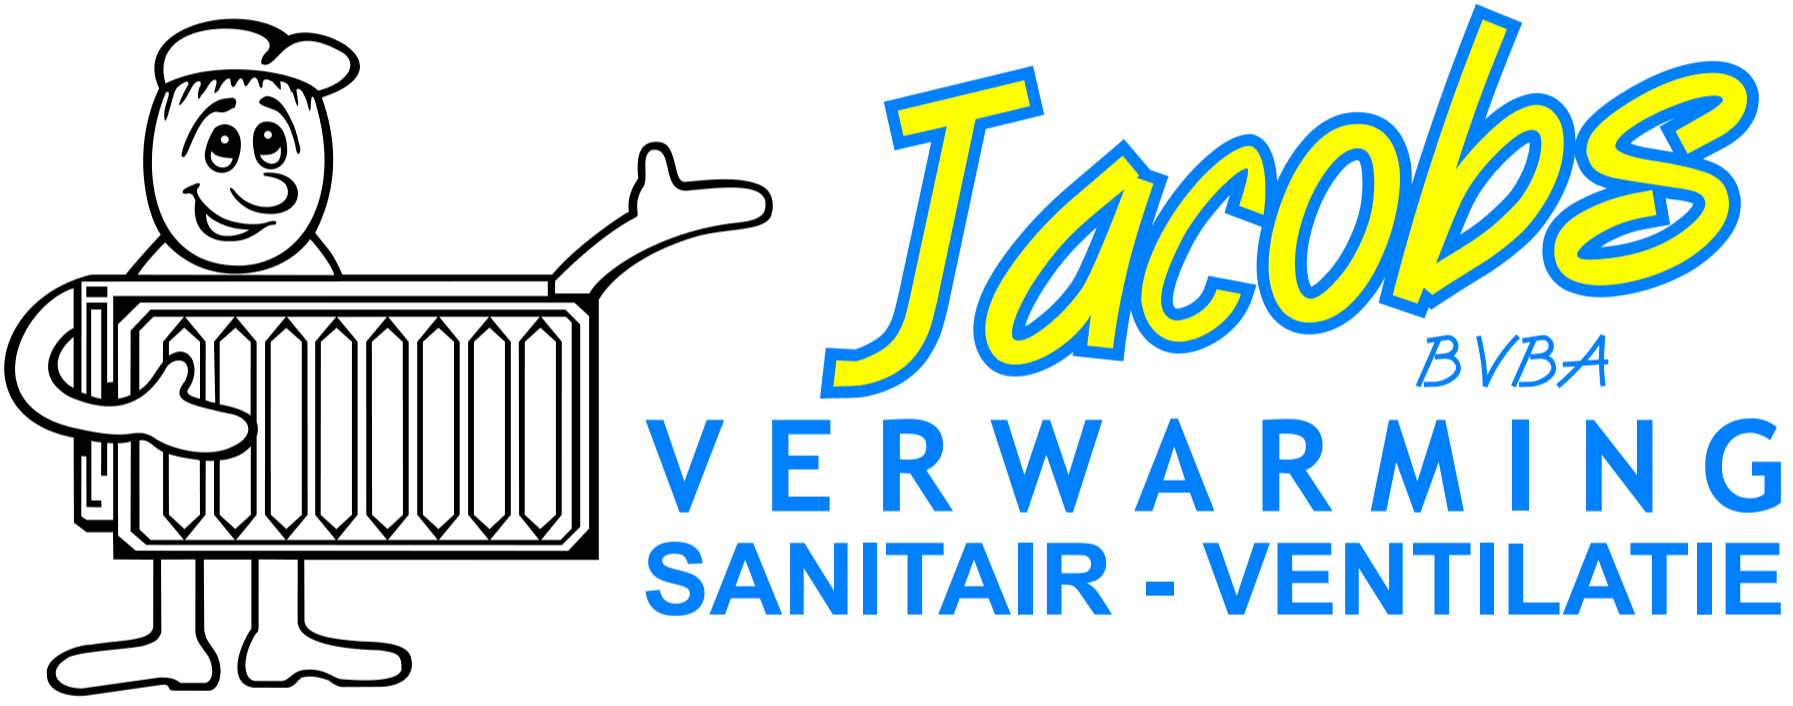 Jacobs Verwarming Sanitair Ventilatie, Tielt-Winge